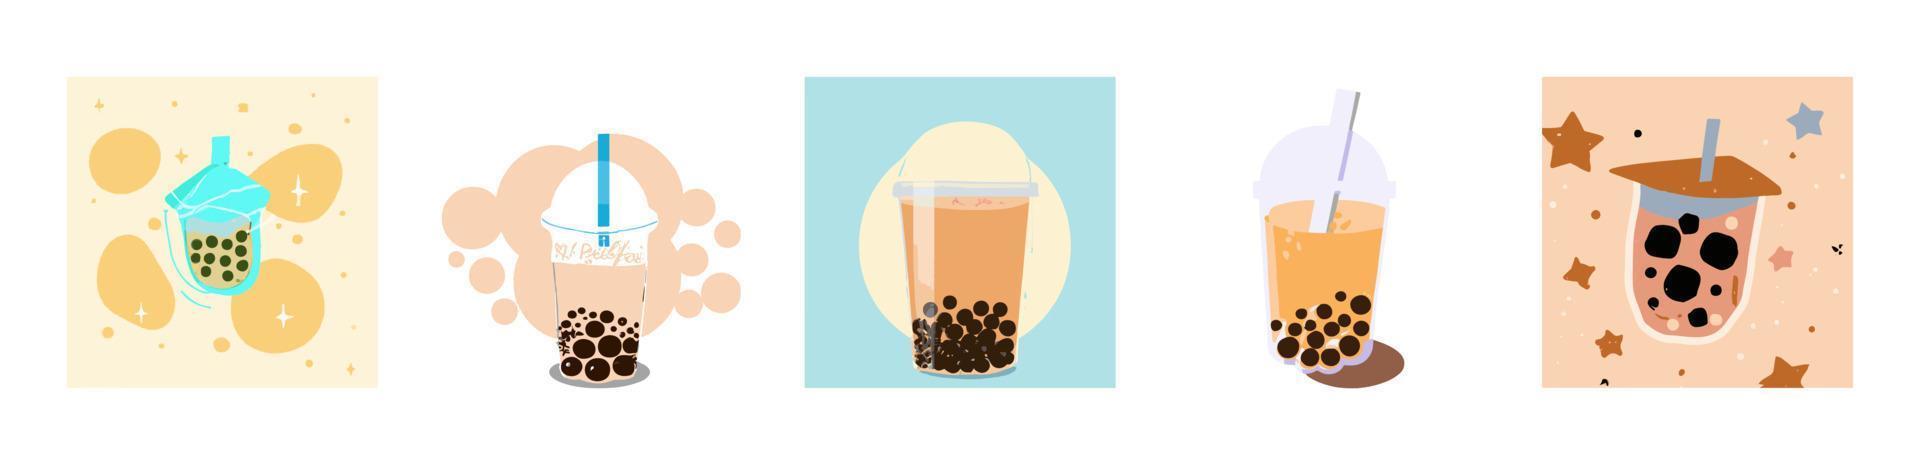 Chá com leite bolha, chá com leite de pérola, diferentes tipos de boba. bebidas saborosas. vetor